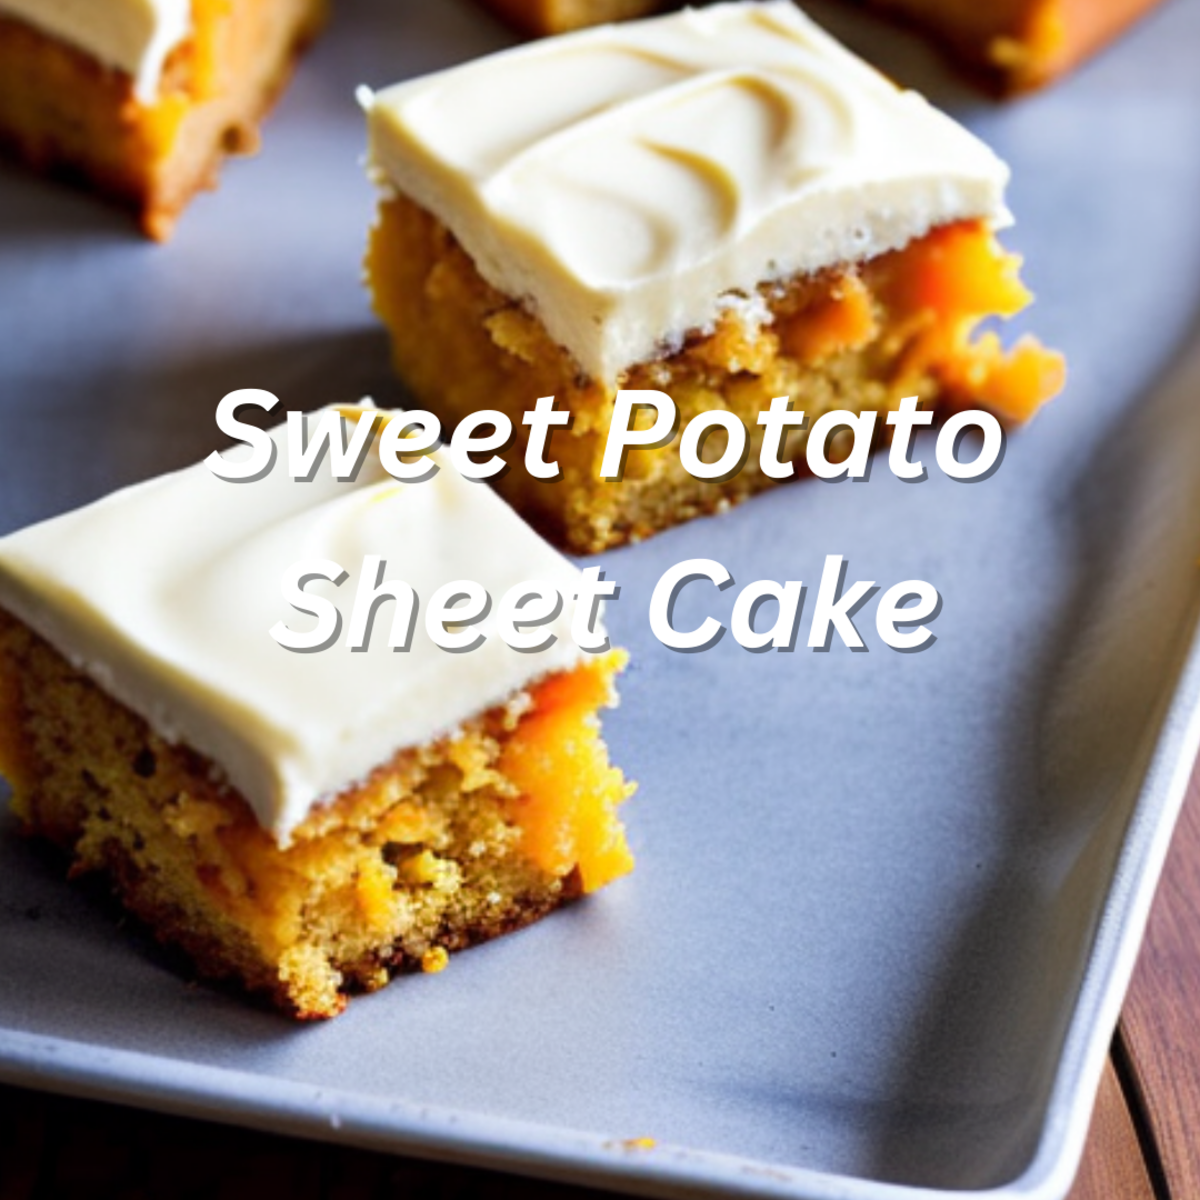 Sweet Potato Sheet Cake